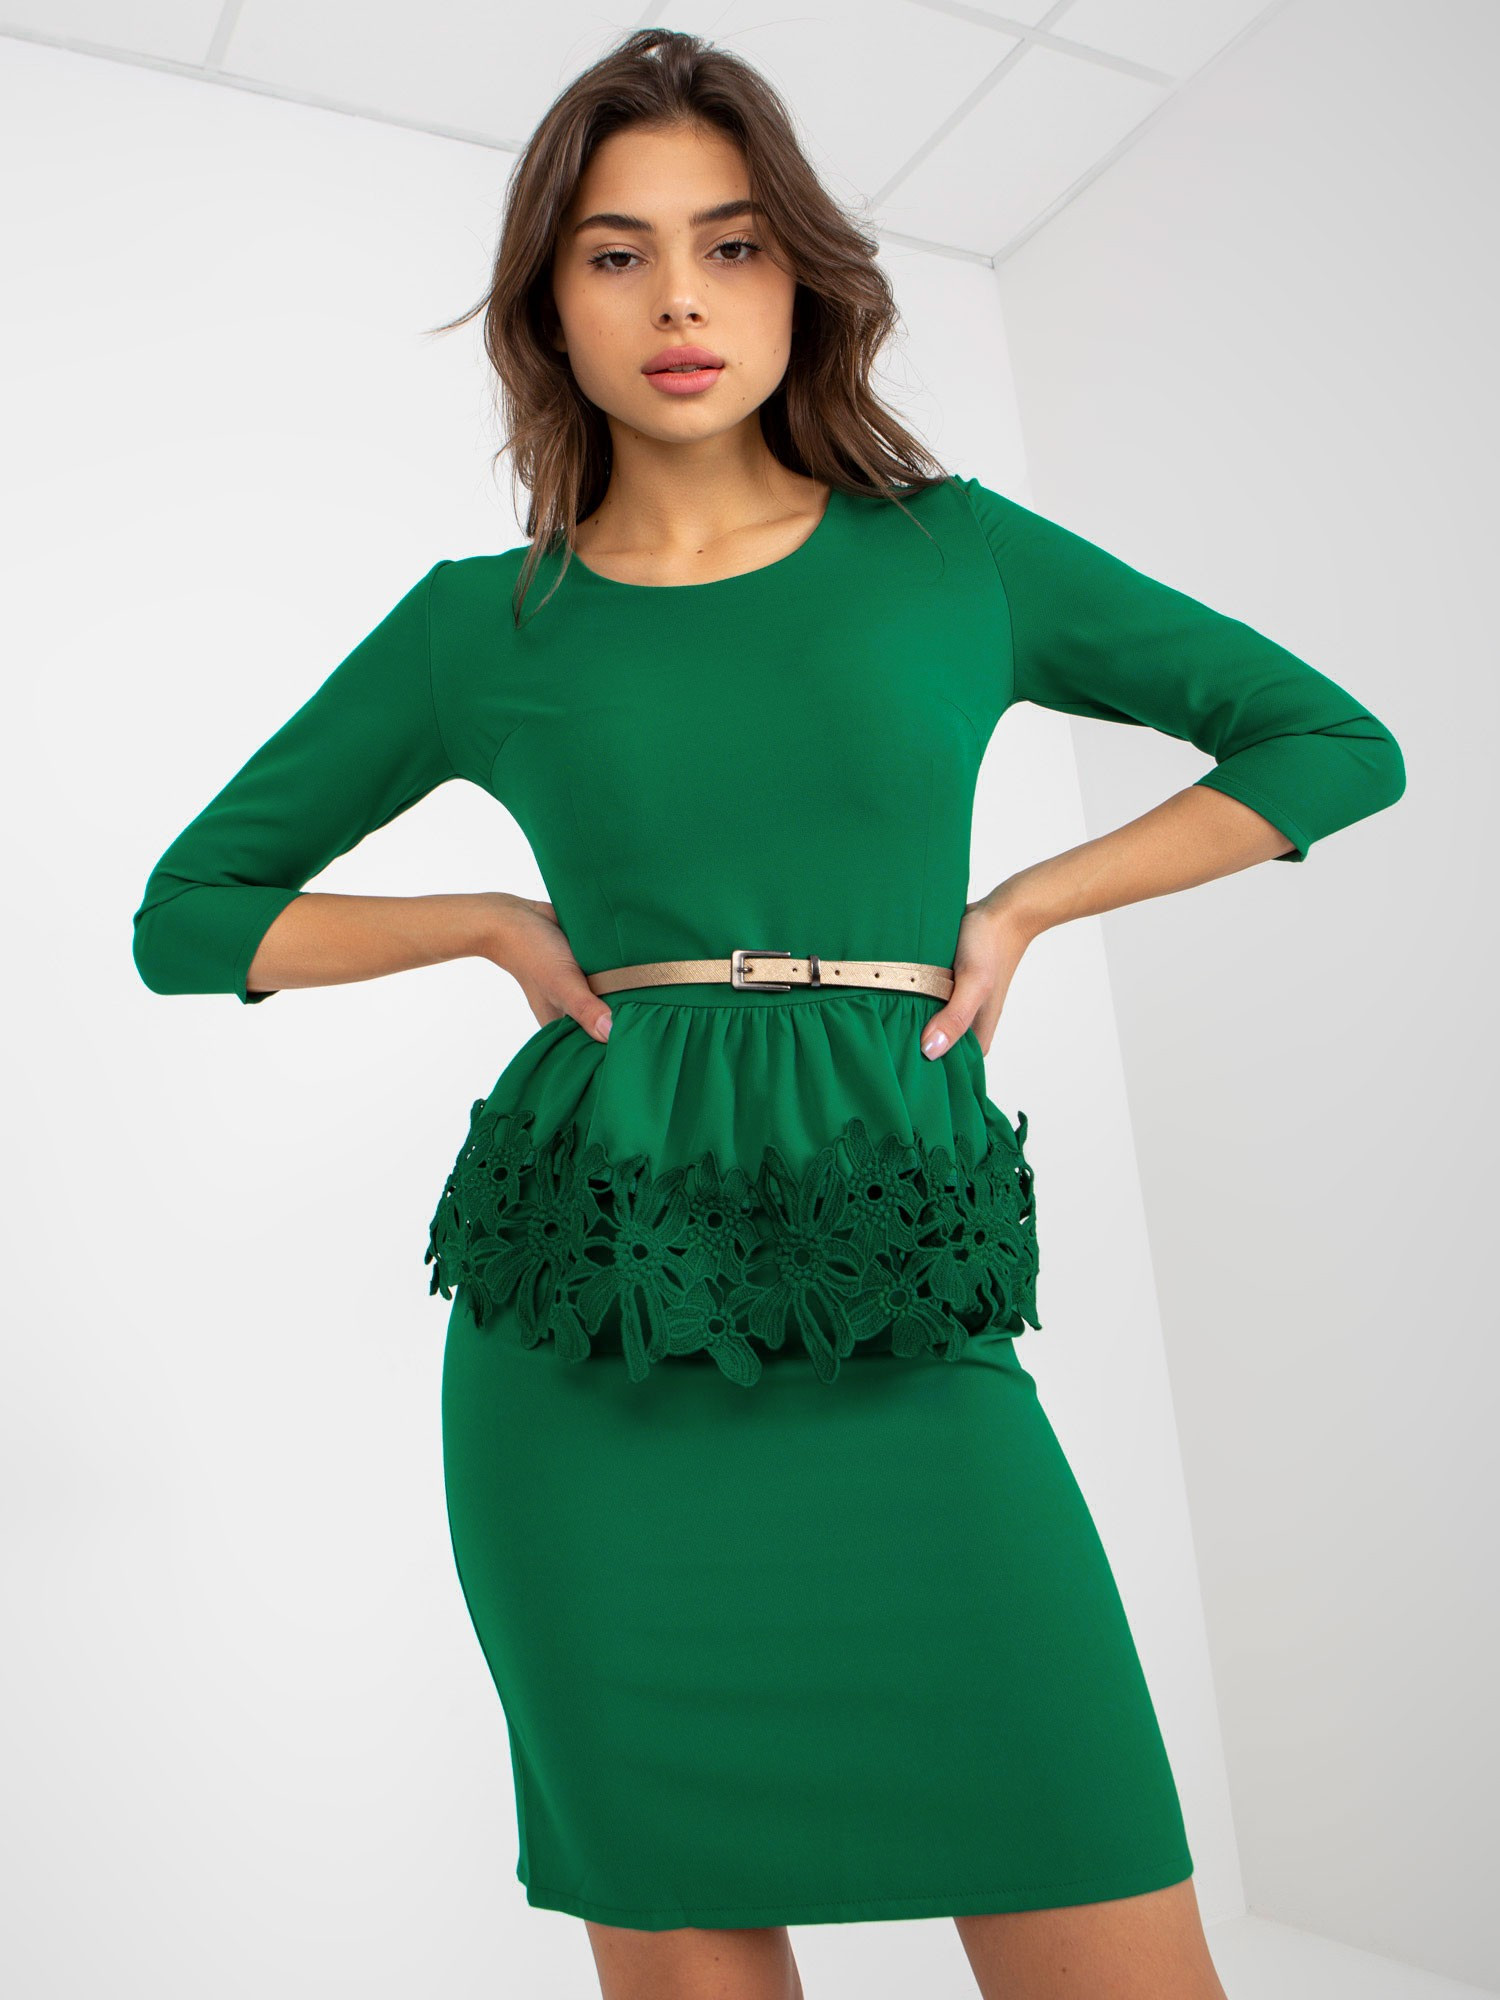 Dámské šaty LK SK model 17772509 zelené 36 - FPrice